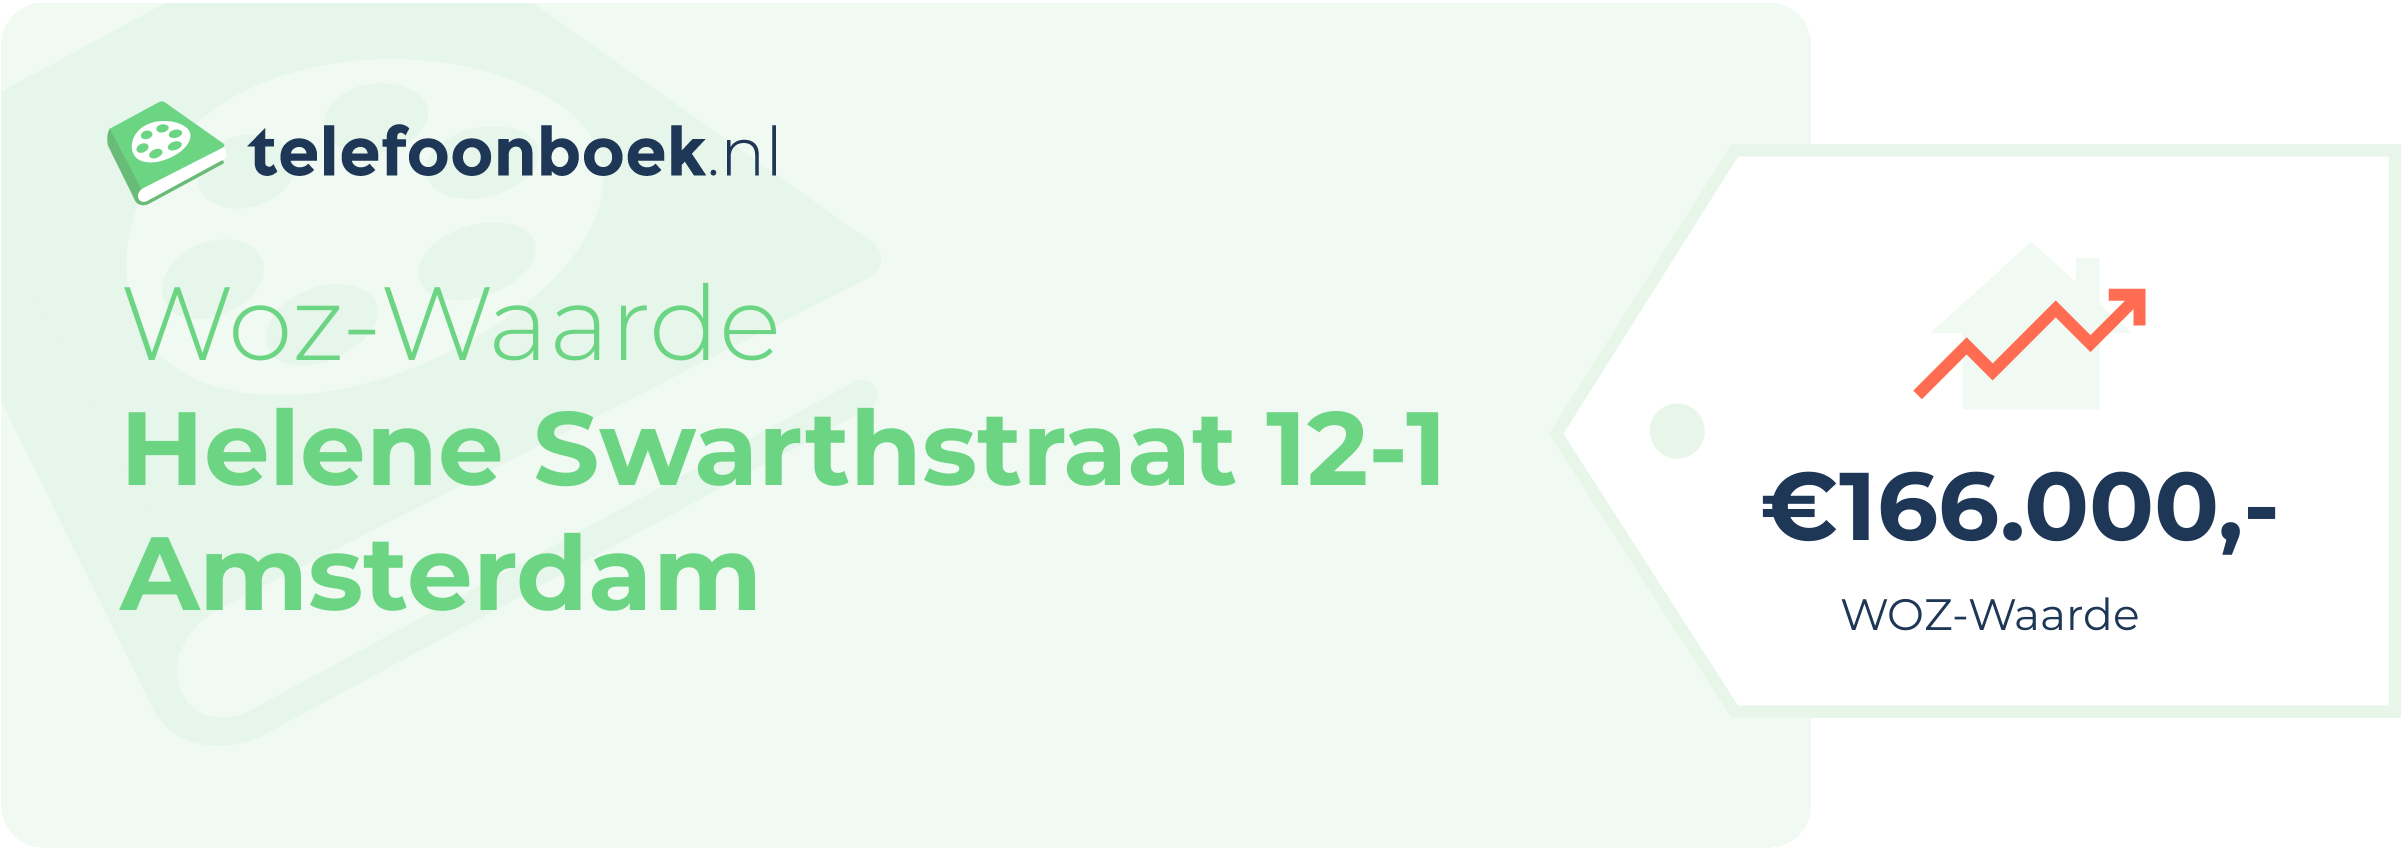 WOZ-waarde Helene Swarthstraat 12-1 Amsterdam